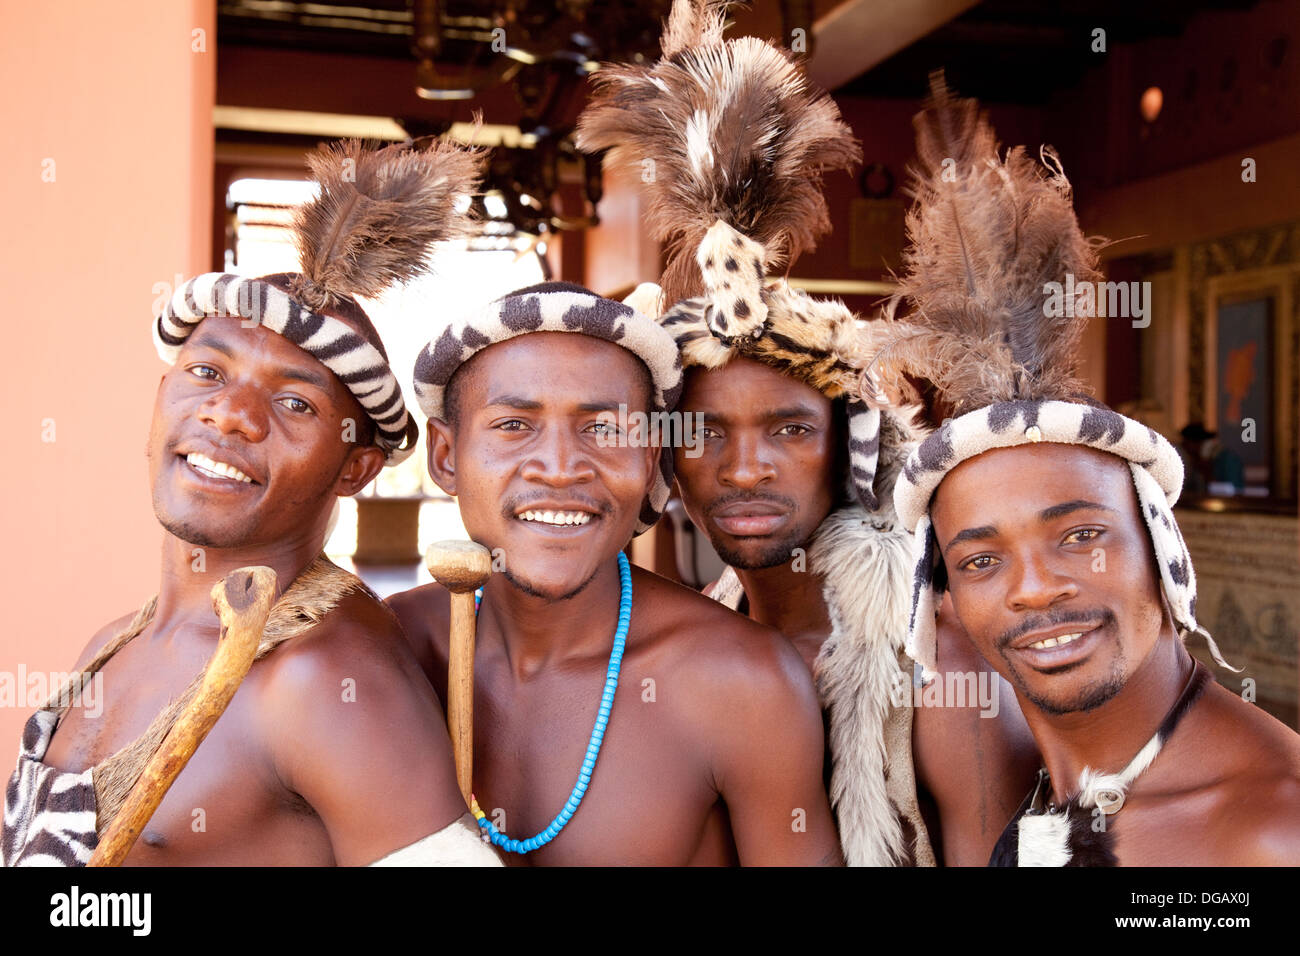 Zambie; quatre hommes africains de la tribu Ngoni, Zambie, en costume traditionnel, Zambie Afrique Banque D'Images